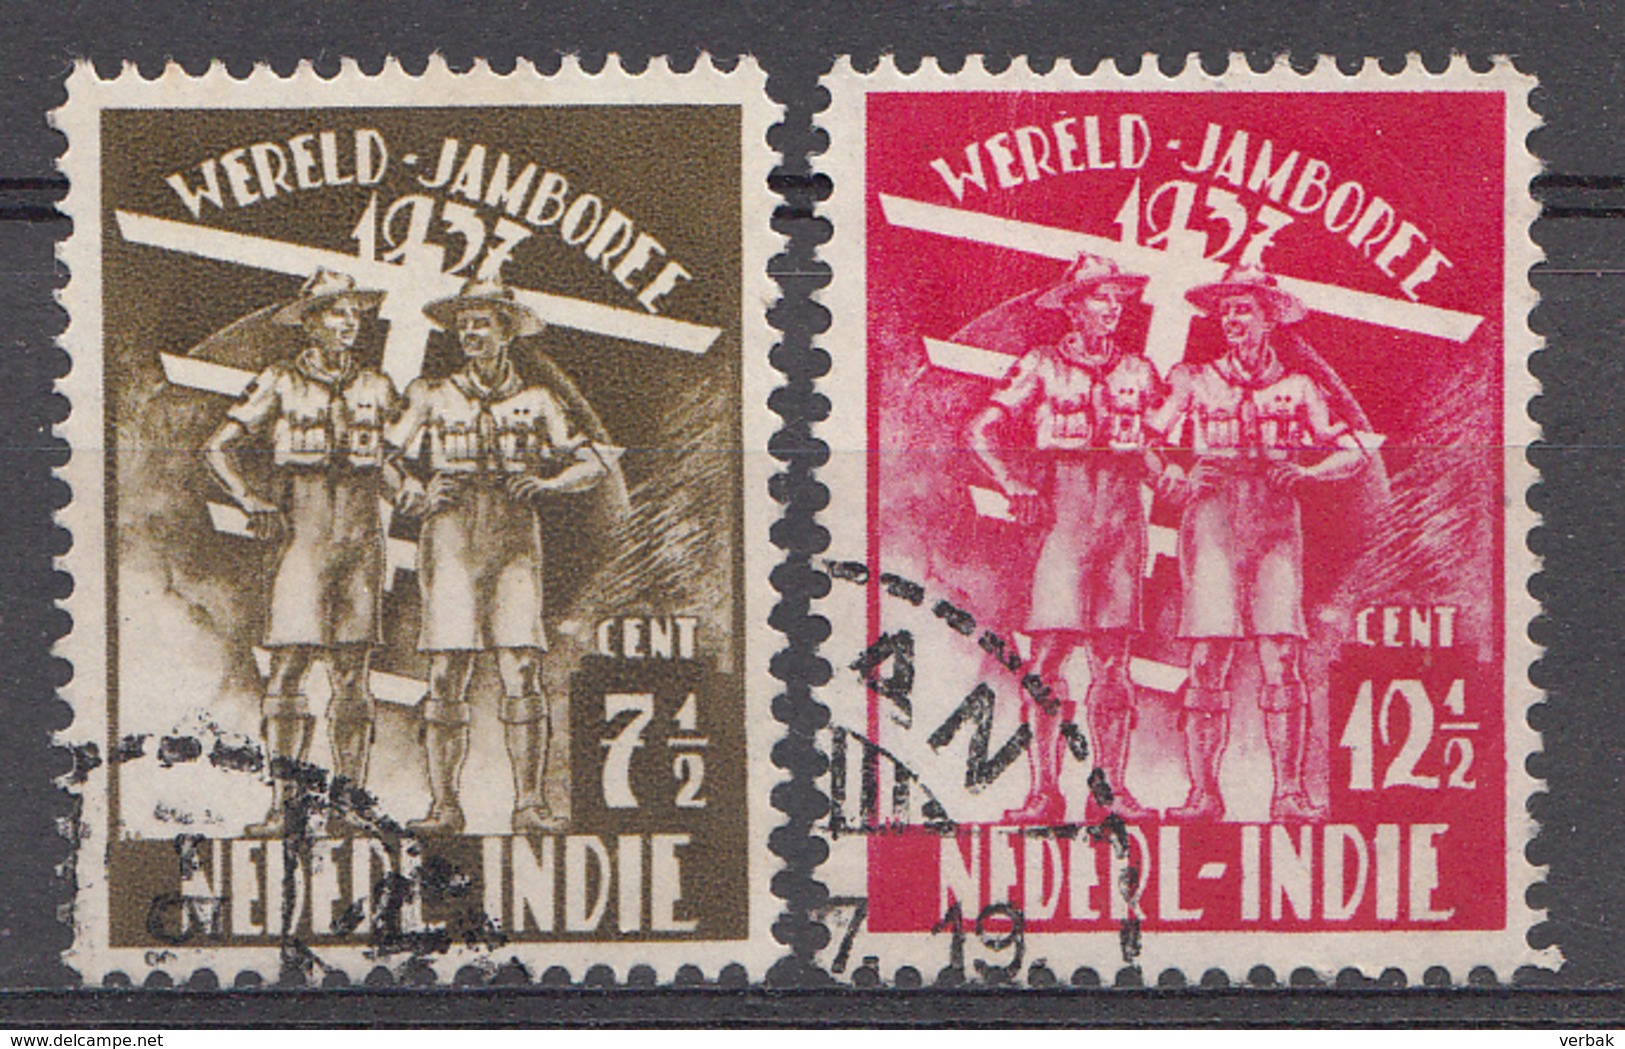 Indes Néerlandaises 1937 Nvph Nr. 226-227 Wereldjamboree Nederland  Oblitérés /Used / Gestempeld - Niederländisch-Indien